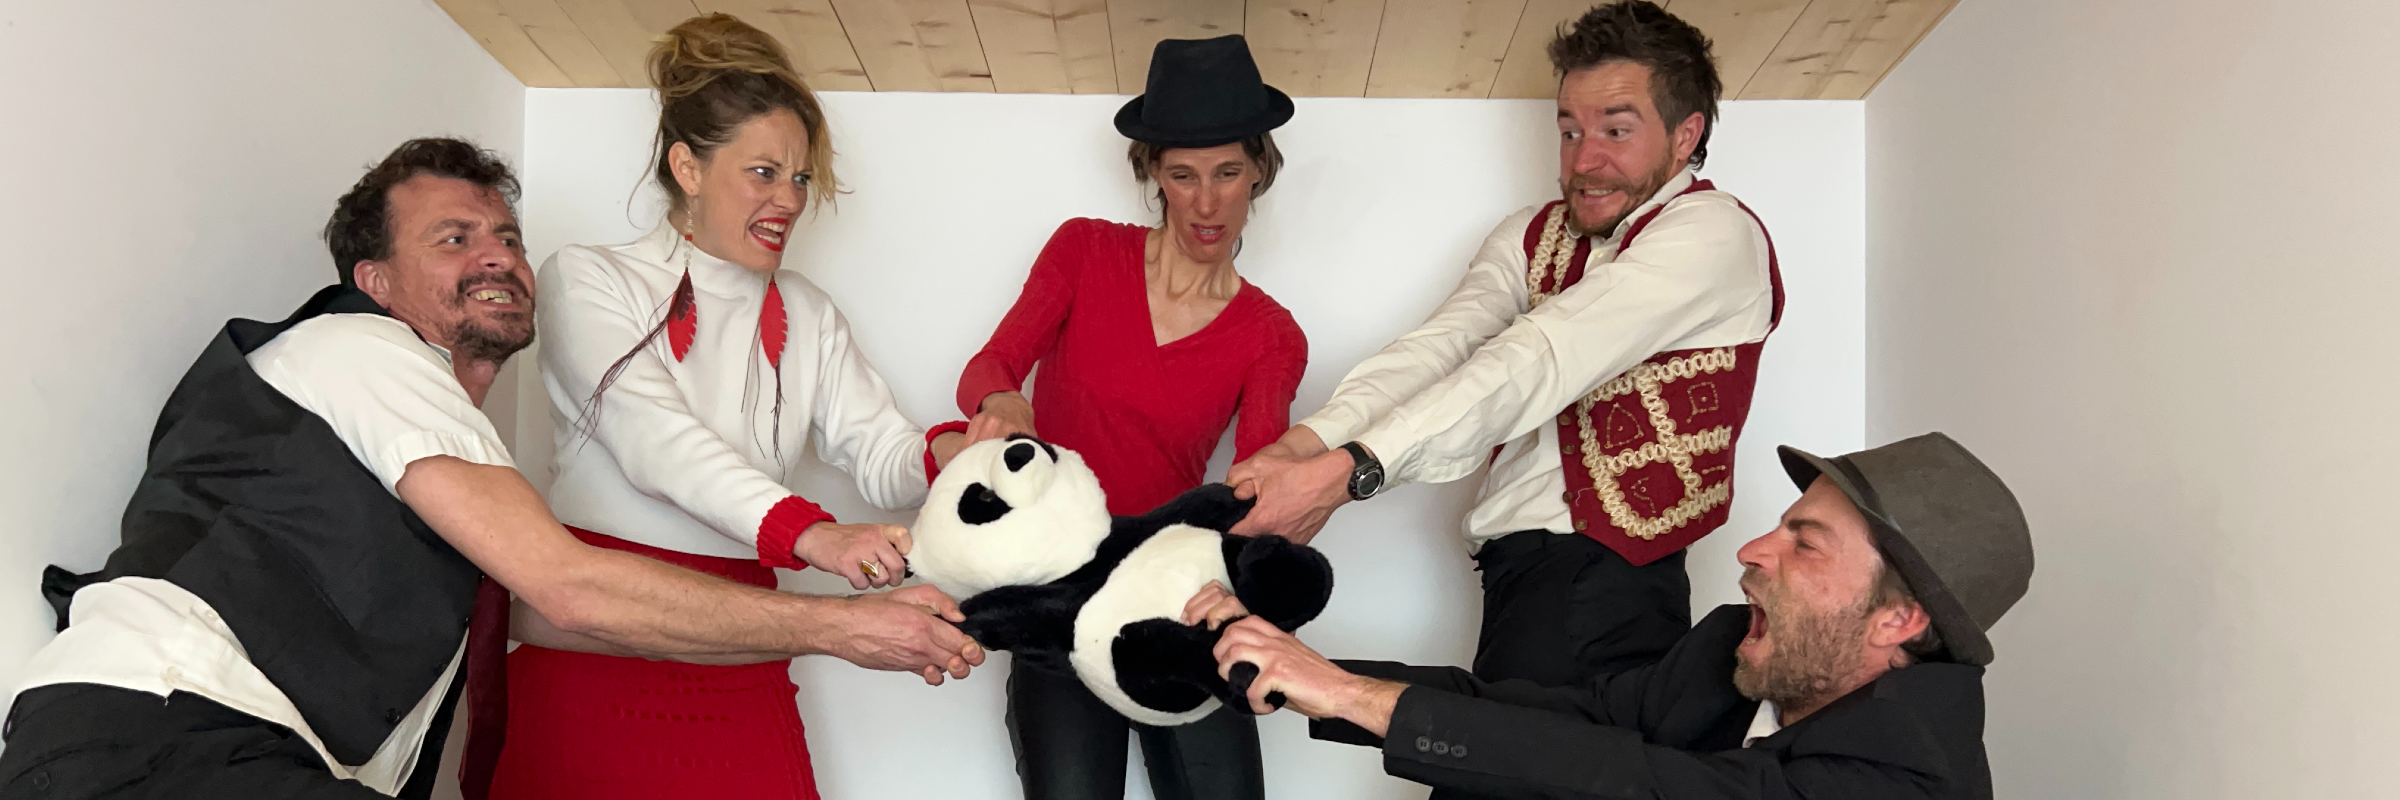 Les Pandas Royals, groupe de musique Swing en représentation à Rhône - photo de couverture